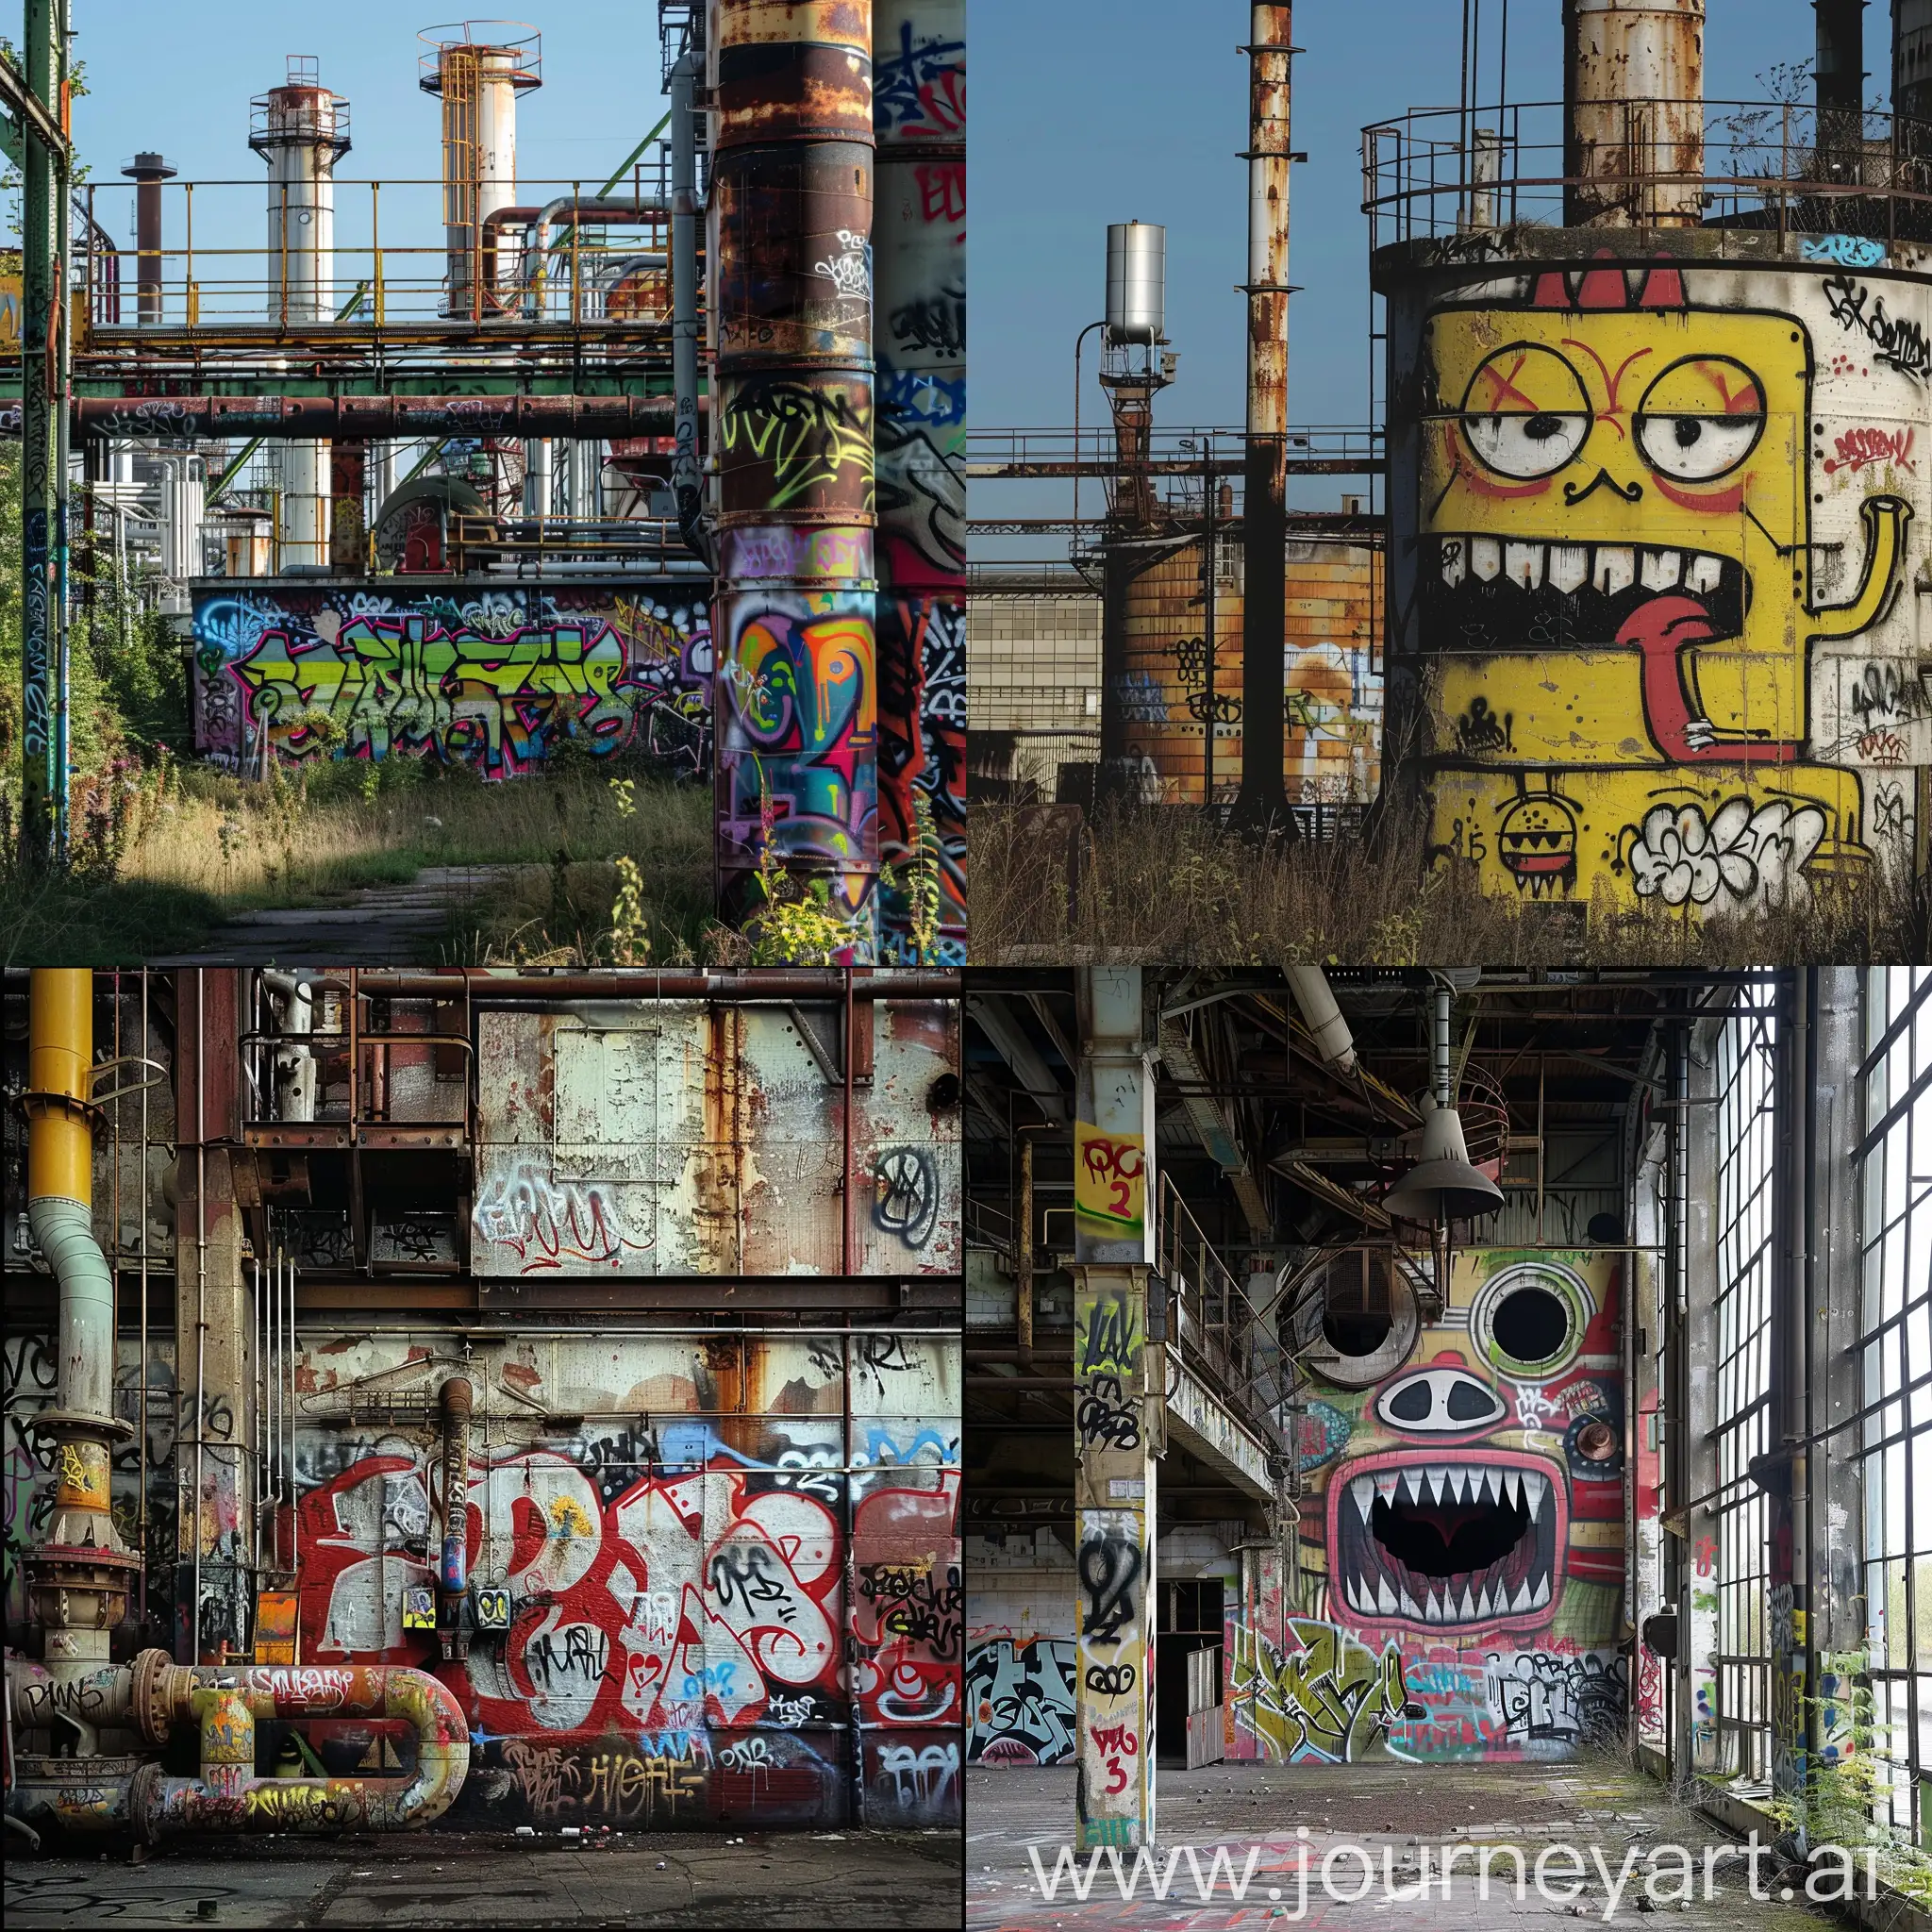 Urban-Graffiti-Art-Near-Industrial-Plants